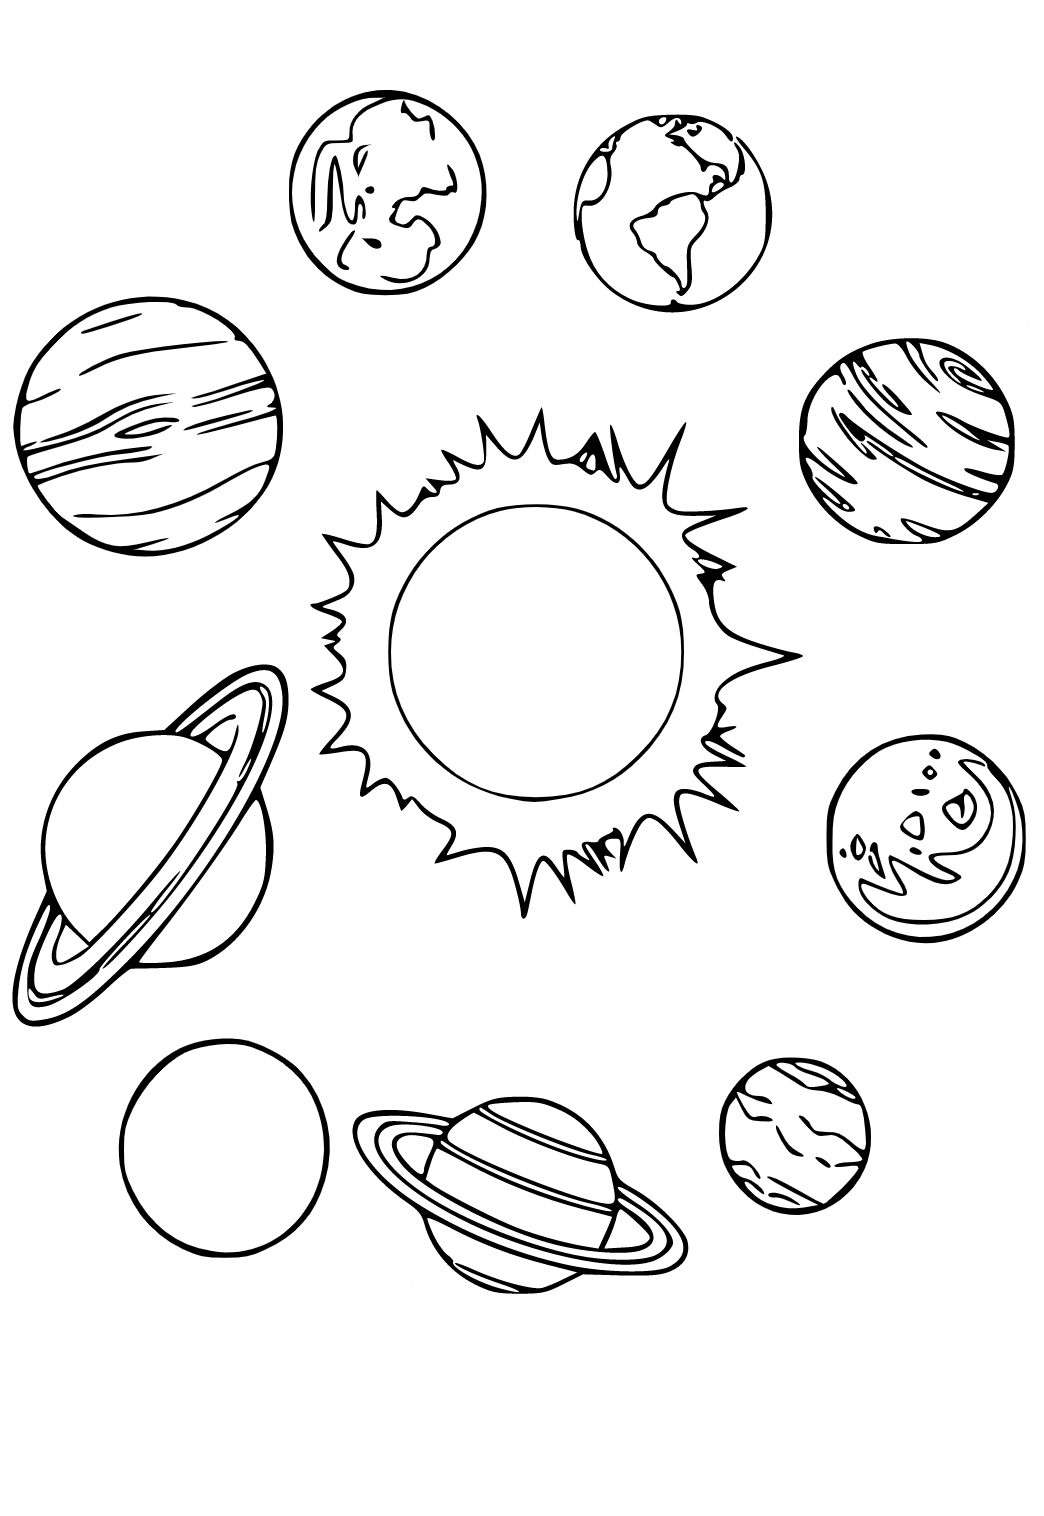 Планеты солнечной системы раскраска. Планеты раскраска. Раскраска планеты солнечной системы для детей. Планеты для распечатки. Как раскрасить планеты солнечной системы